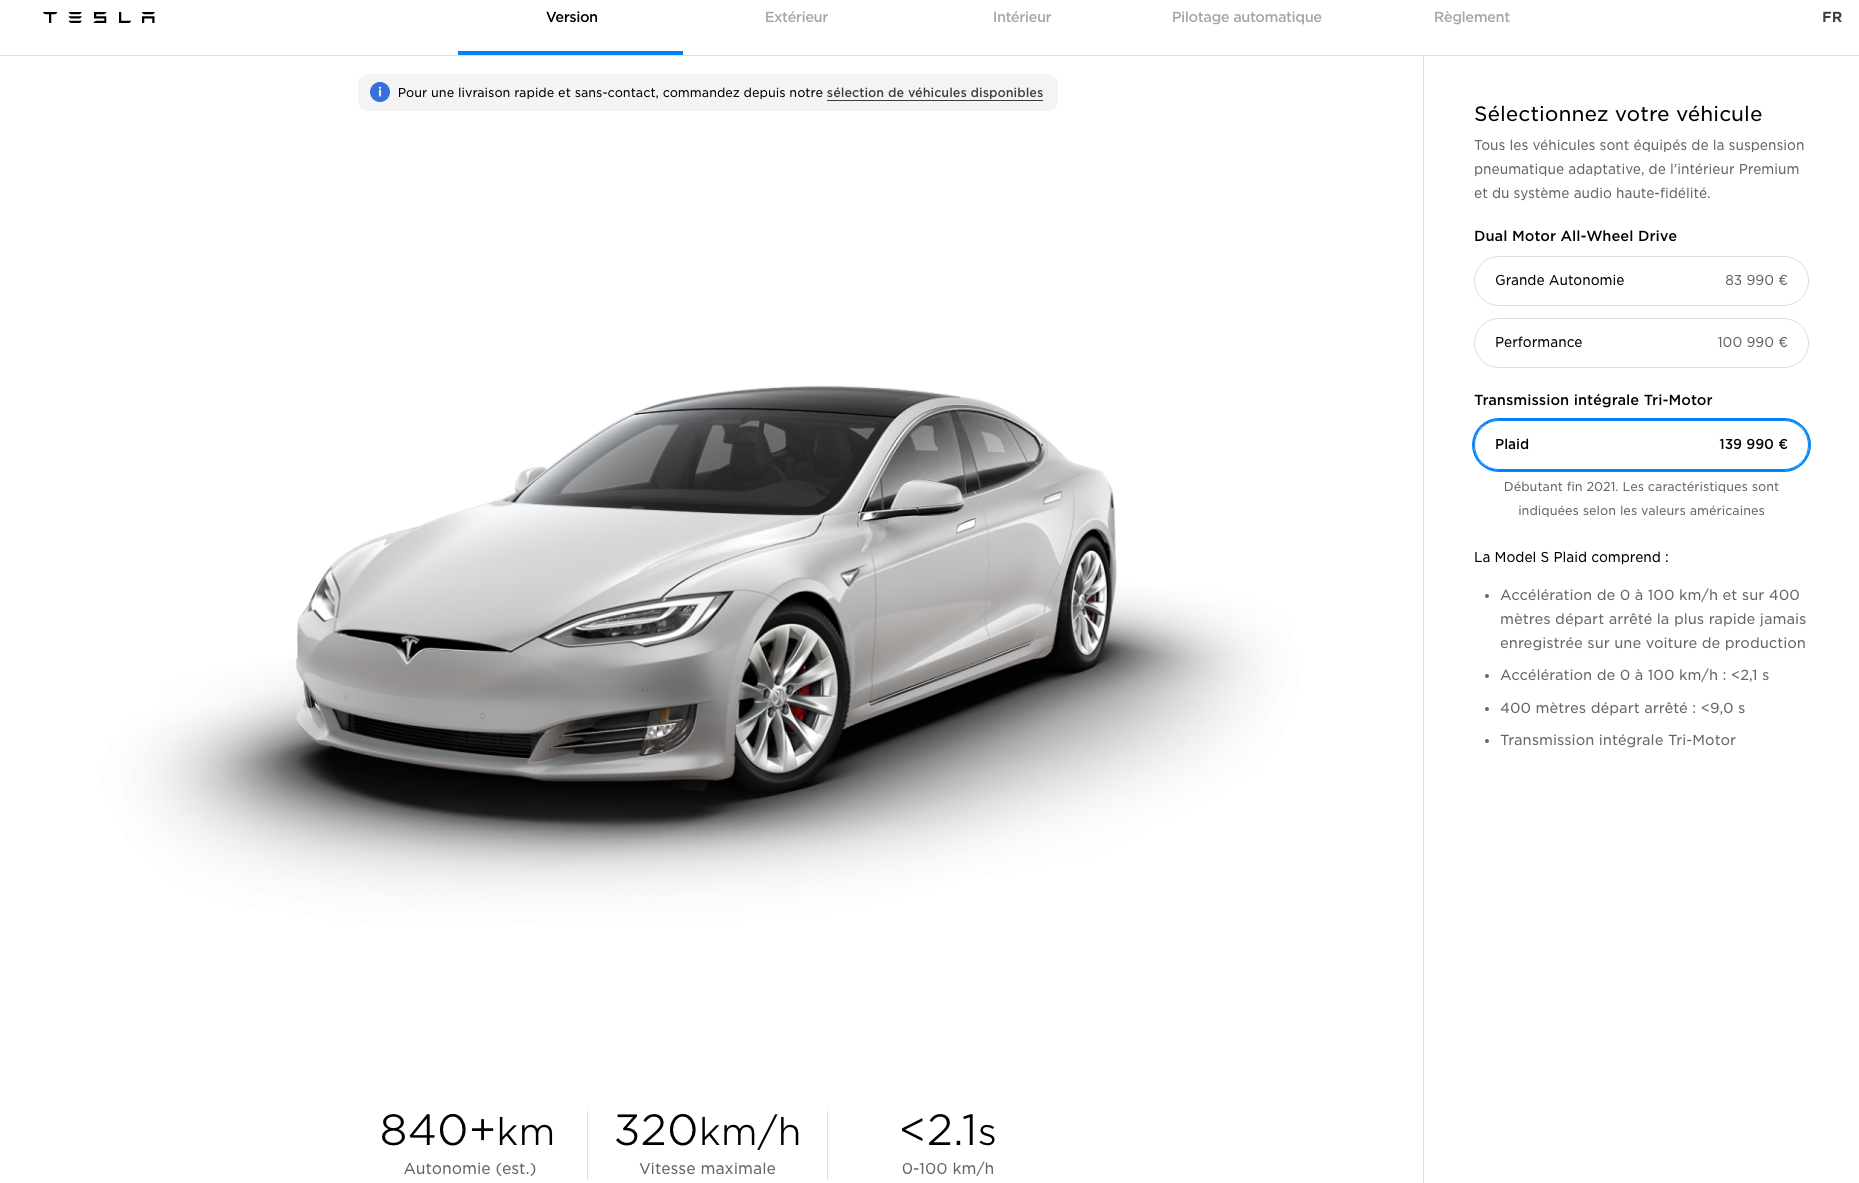 Annoncée lors du Battery Day, la Tesla Model S Plaid aura jusqu'à 840 km d'autonomie